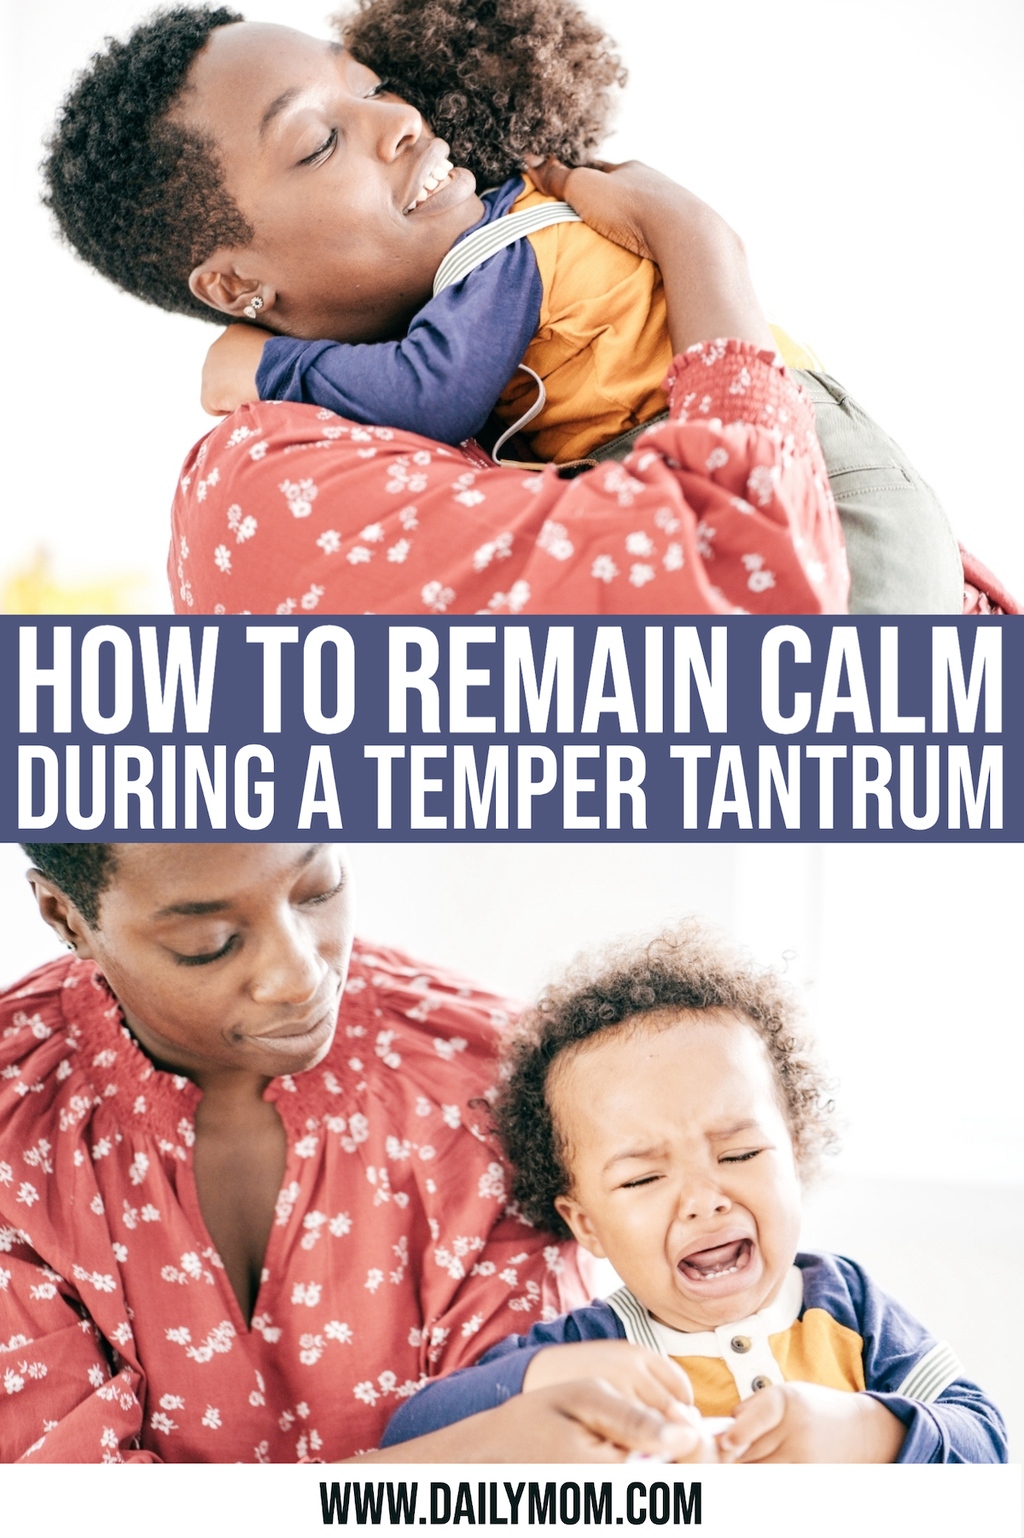 daily mom parent portal Temper Tantrums 2 1